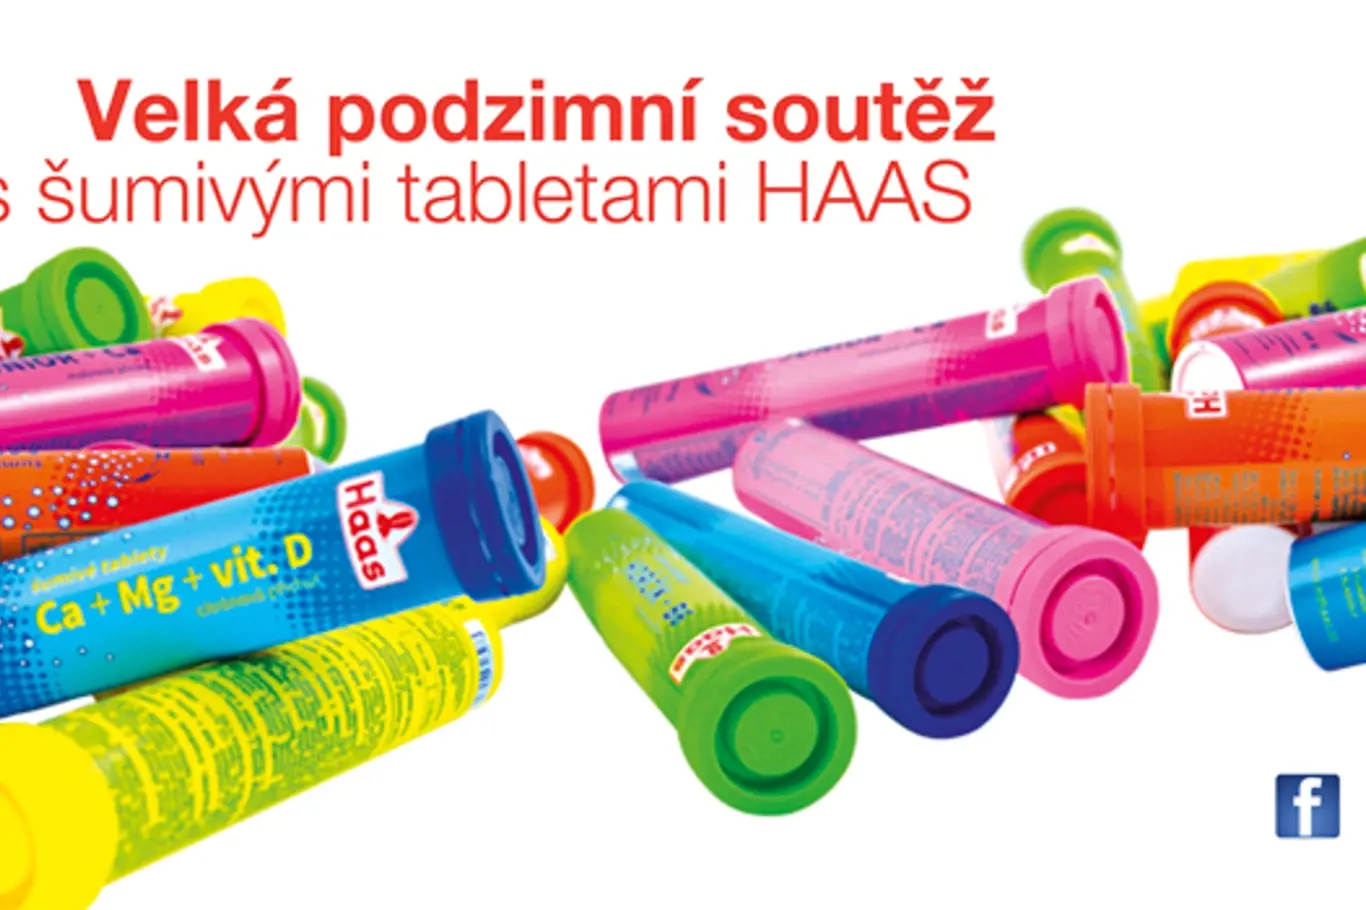 Šumivé tablety HAAS